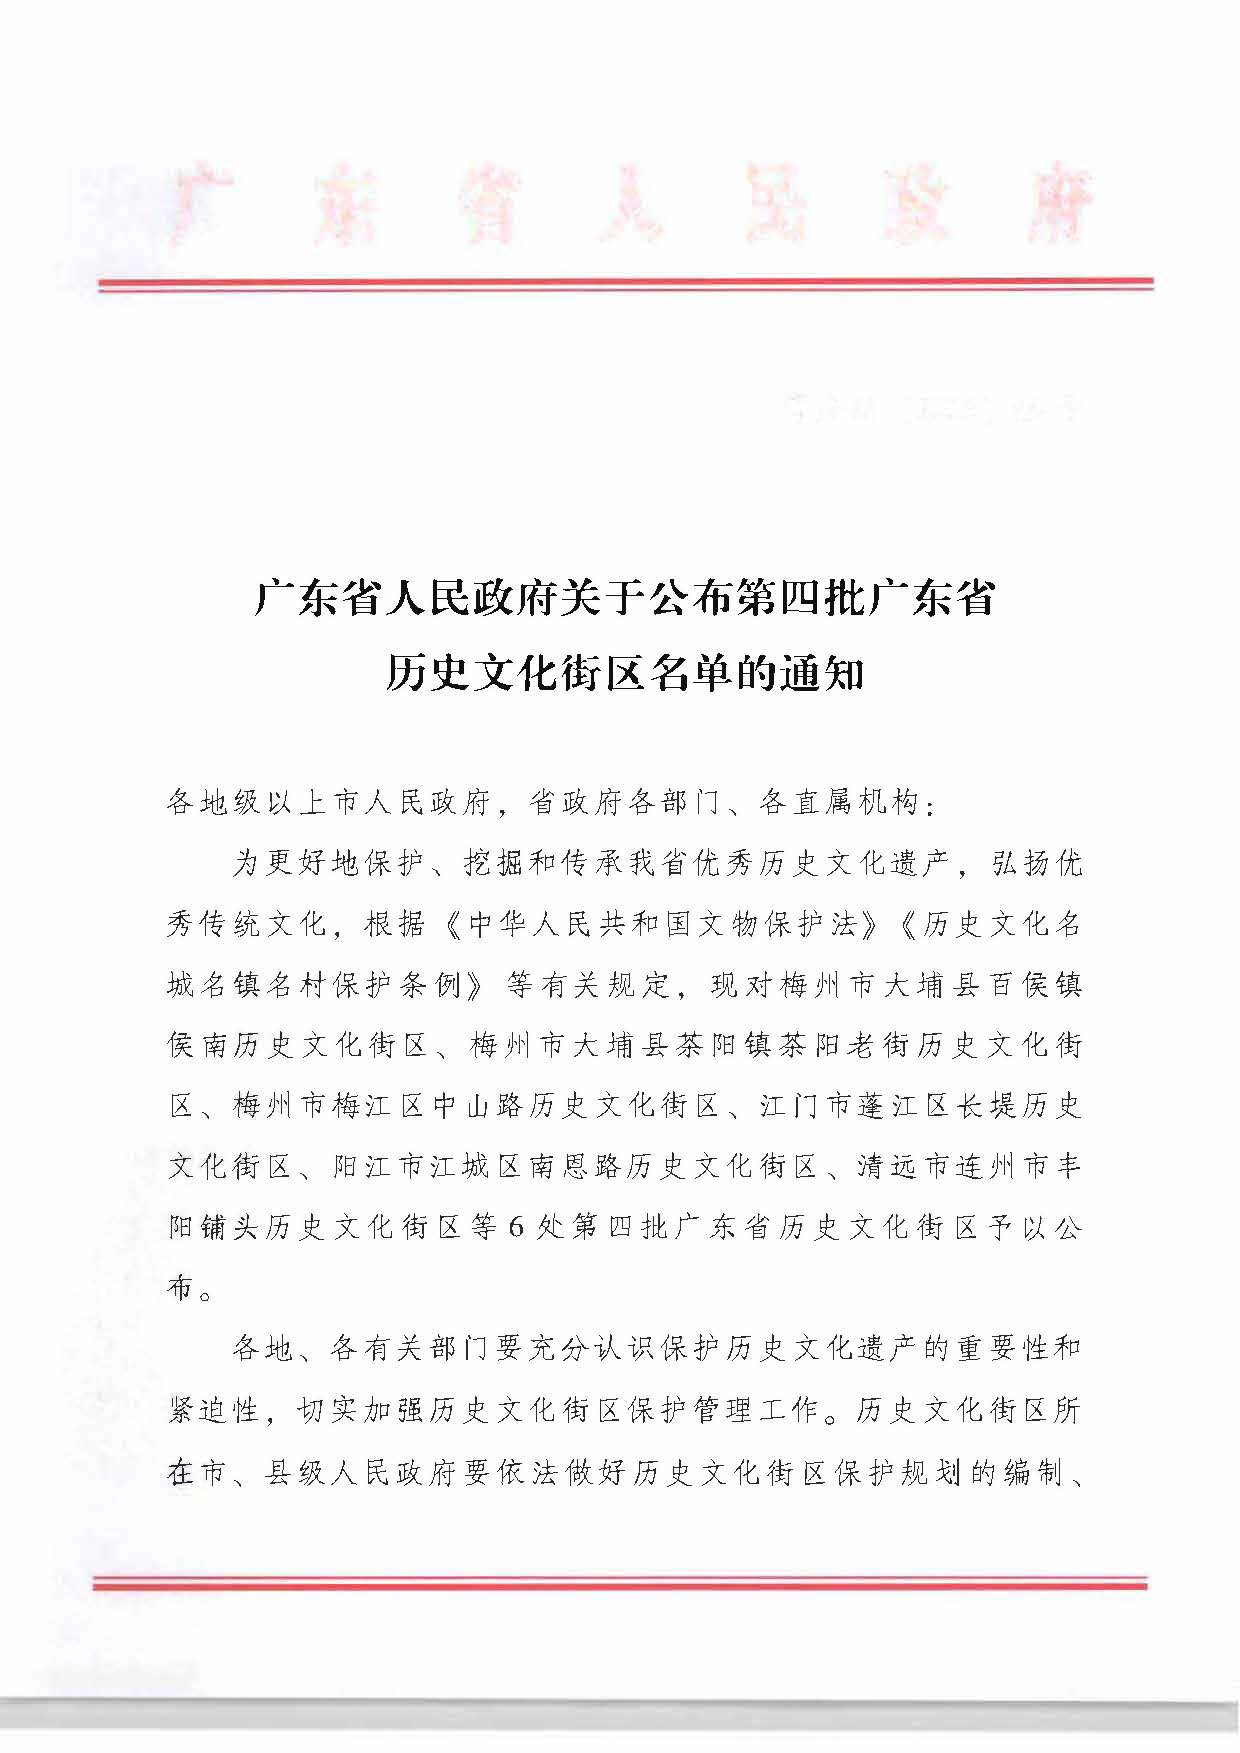 广东省人民政府关于公布第四批广东省历史文化街区名单的通知_页面_1.jpg